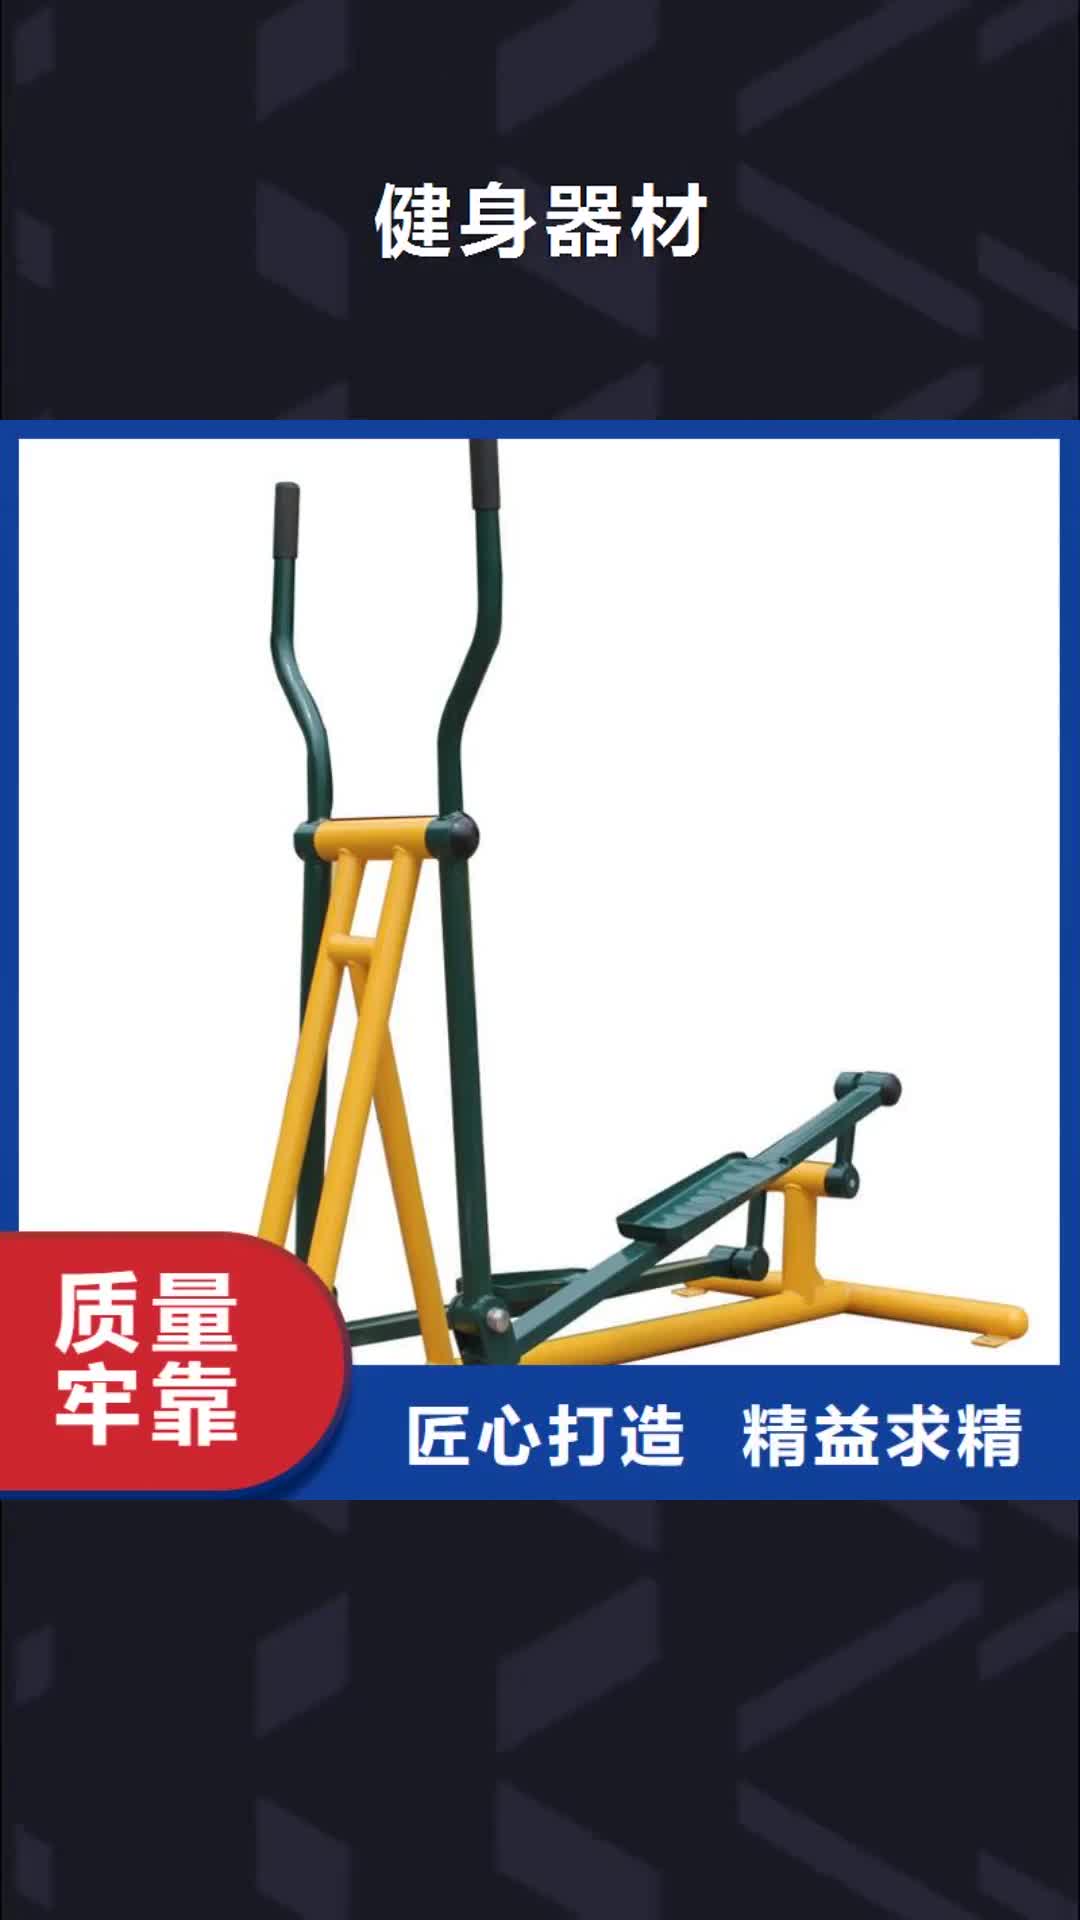 【惠州 健身器材 塑胶地板国标检测放心购买】